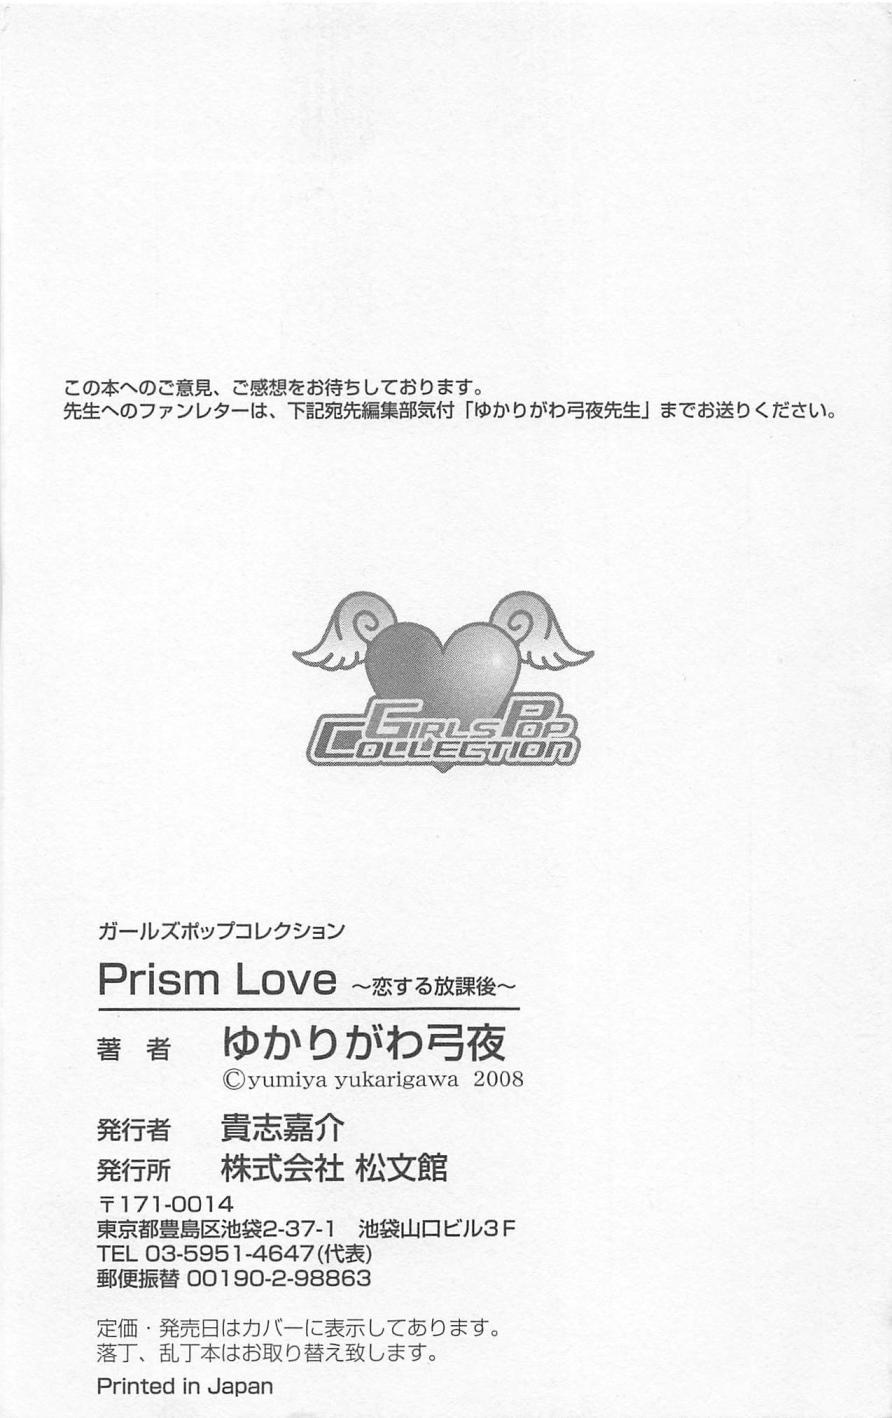 [ゆかりがわ弓夜] Prism Love ~恋する放課後~